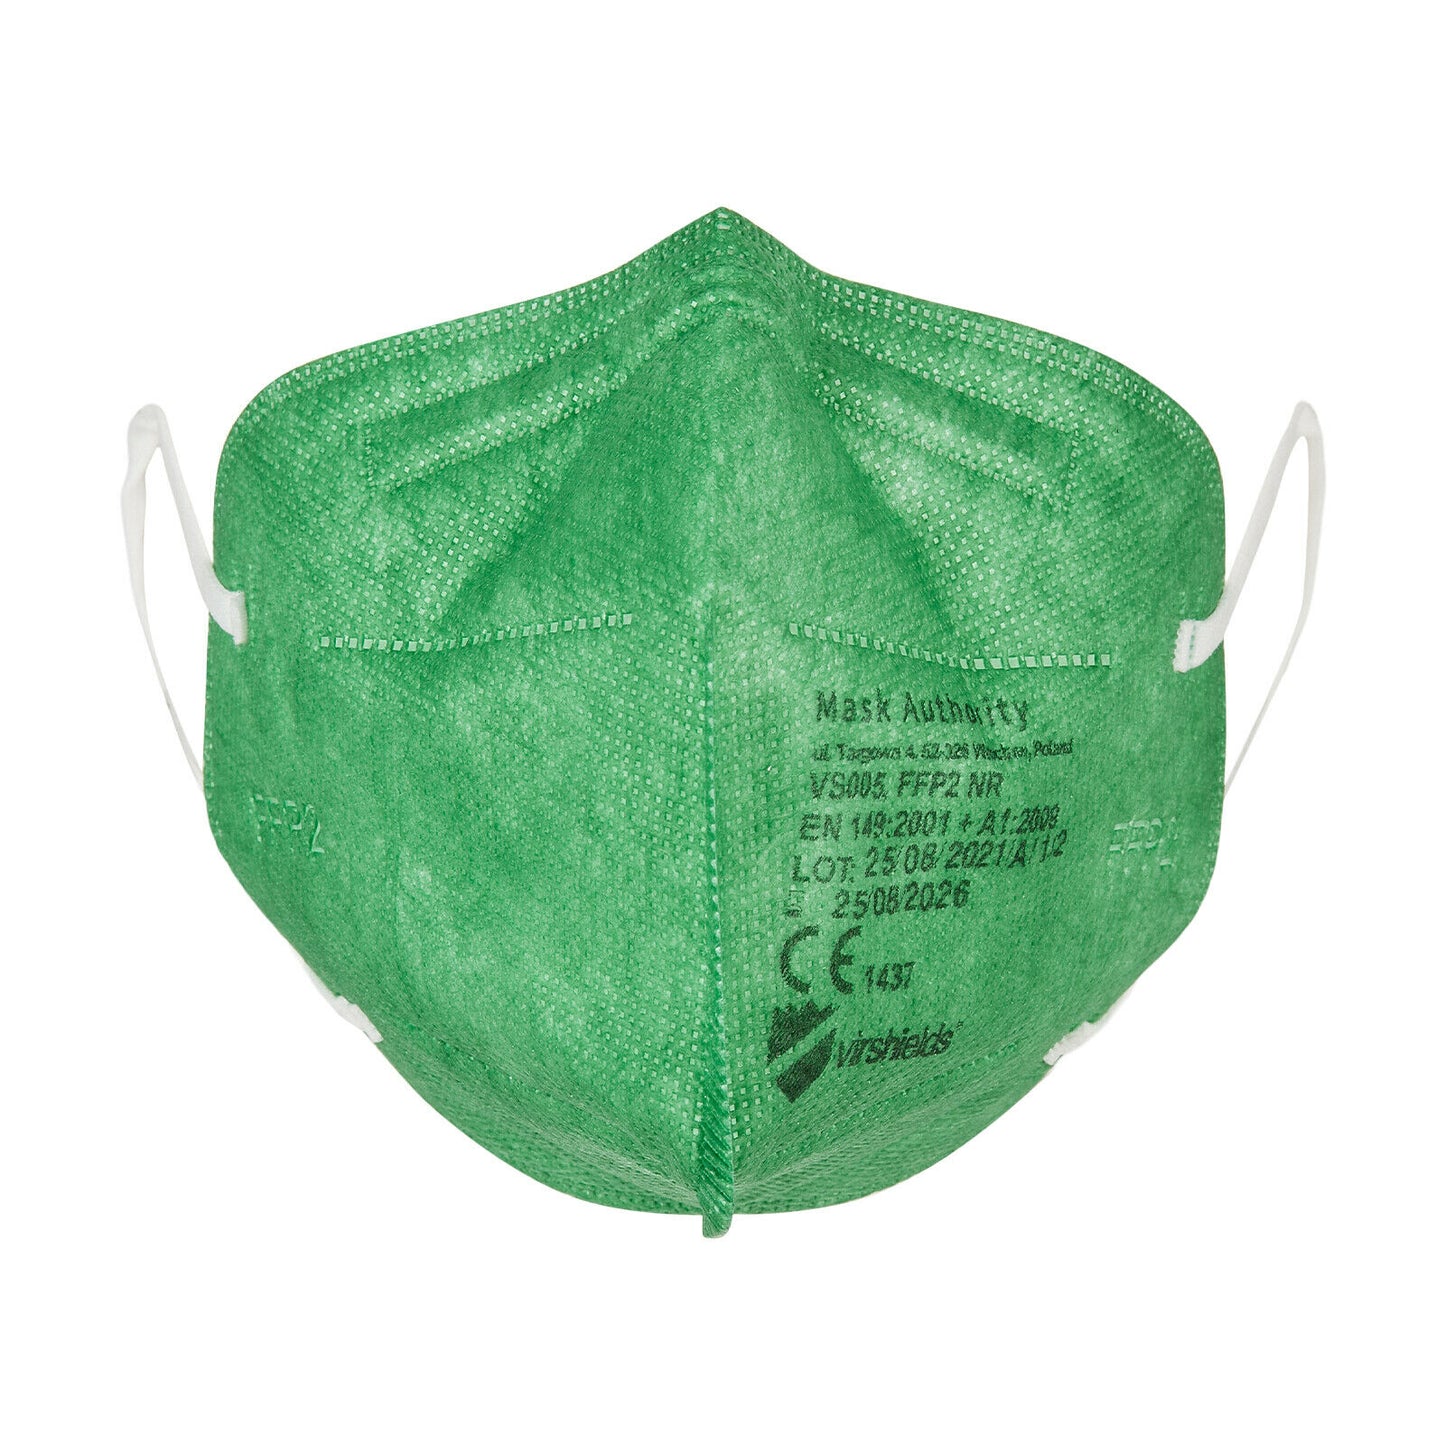 FFP2 Maske in Grün. Made in EU, CE Zertifiziert, 10 Stück einzeln verpackt - Medizinische Masken